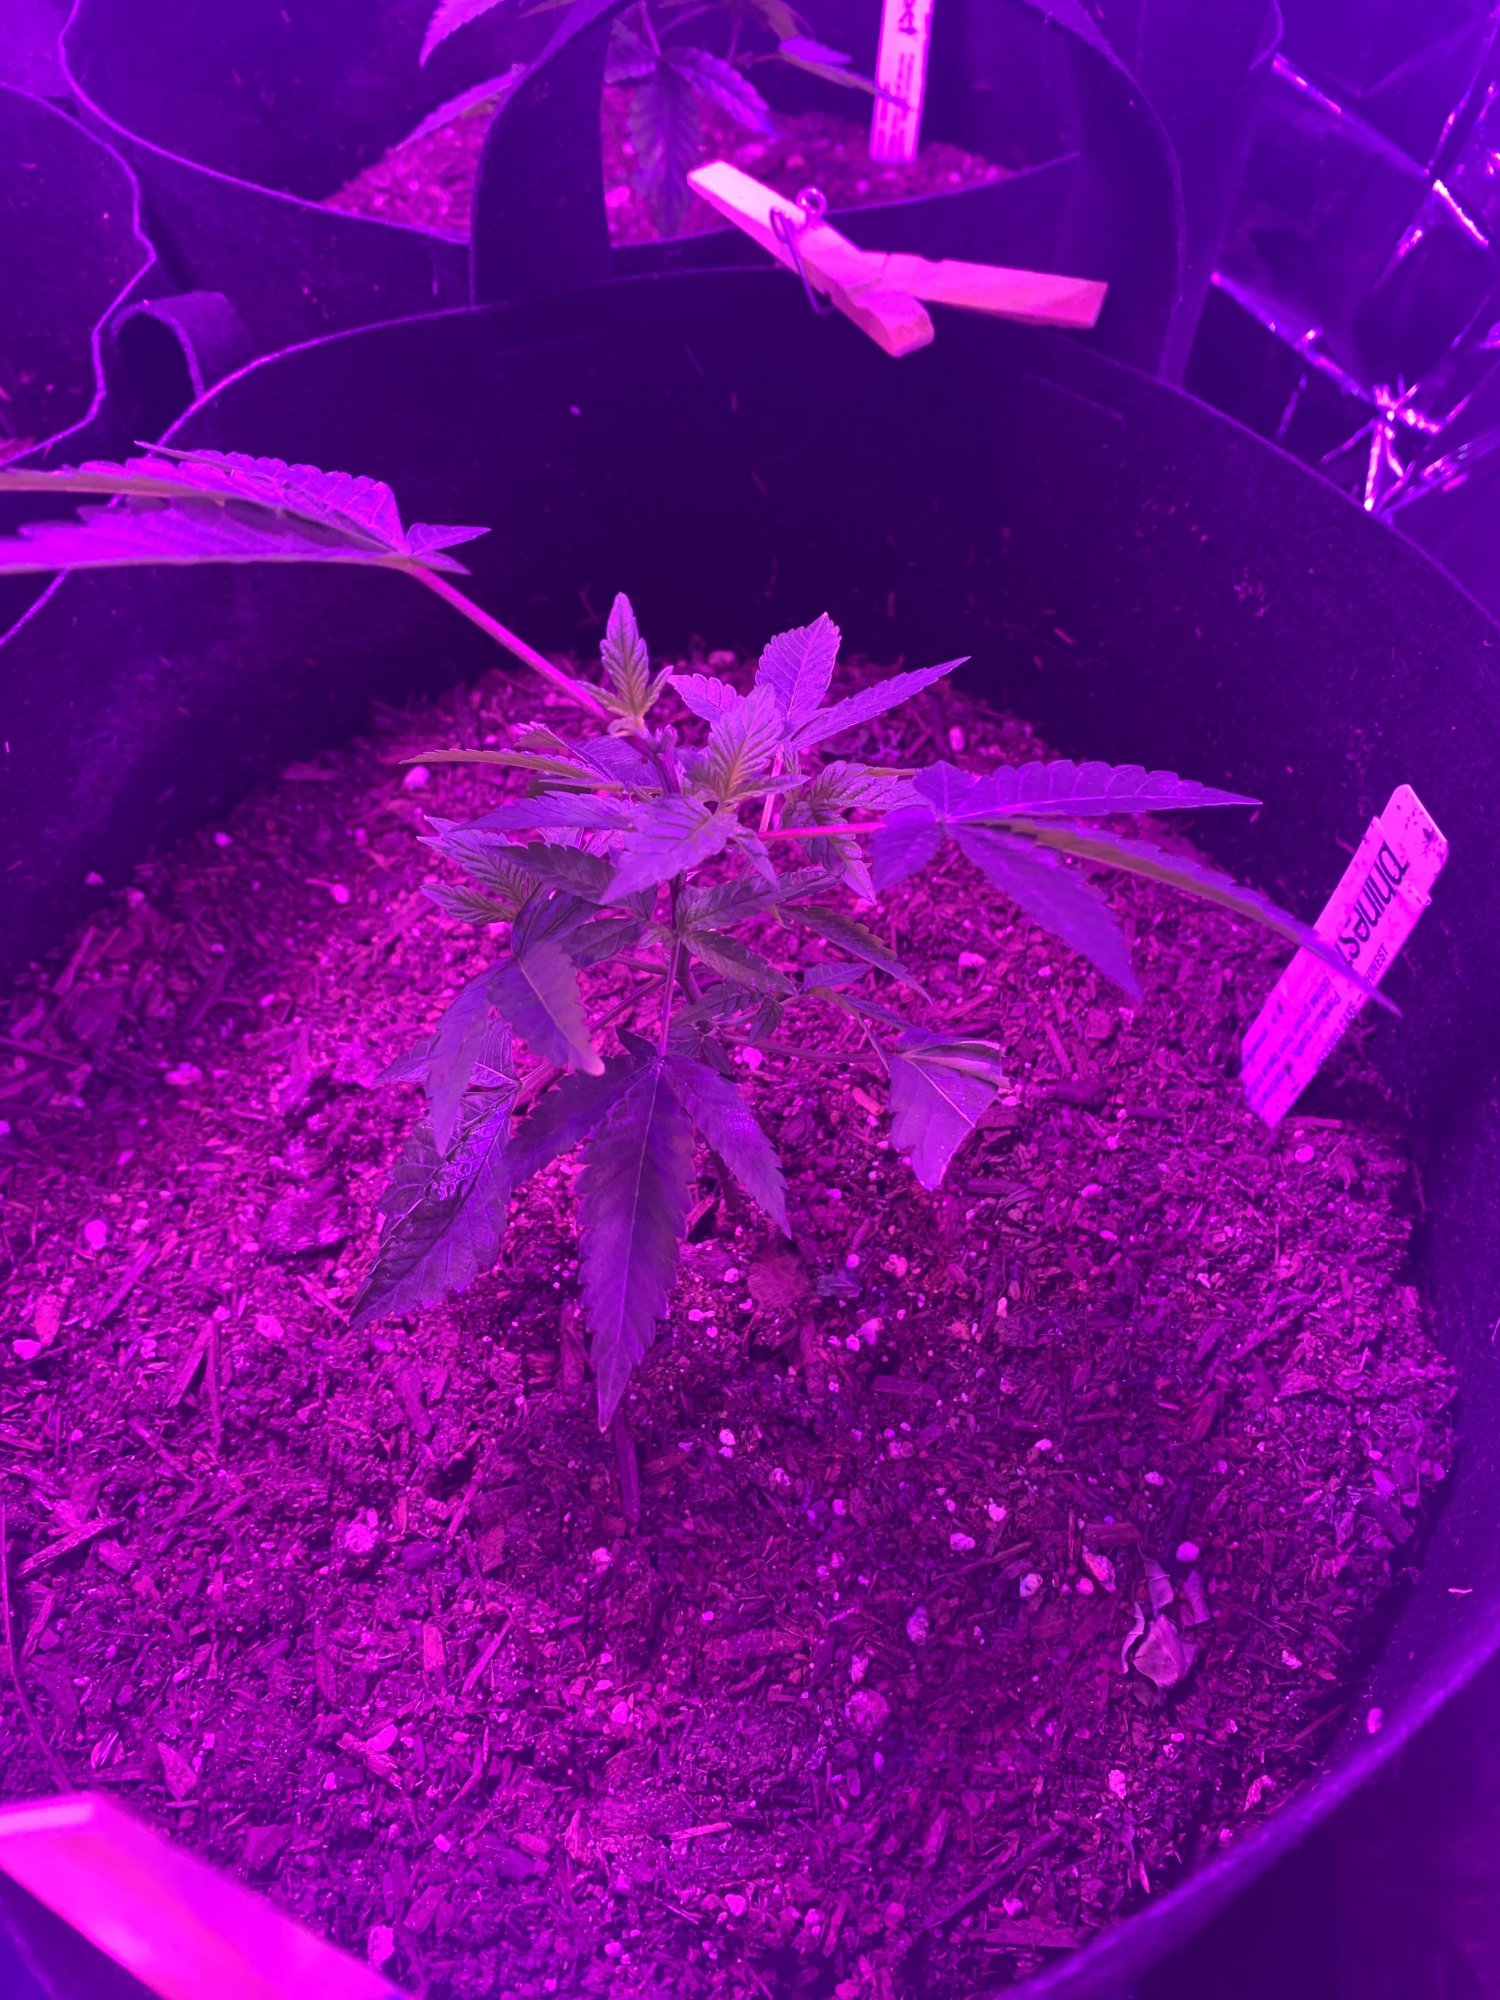 First indoor grow  looking good so far